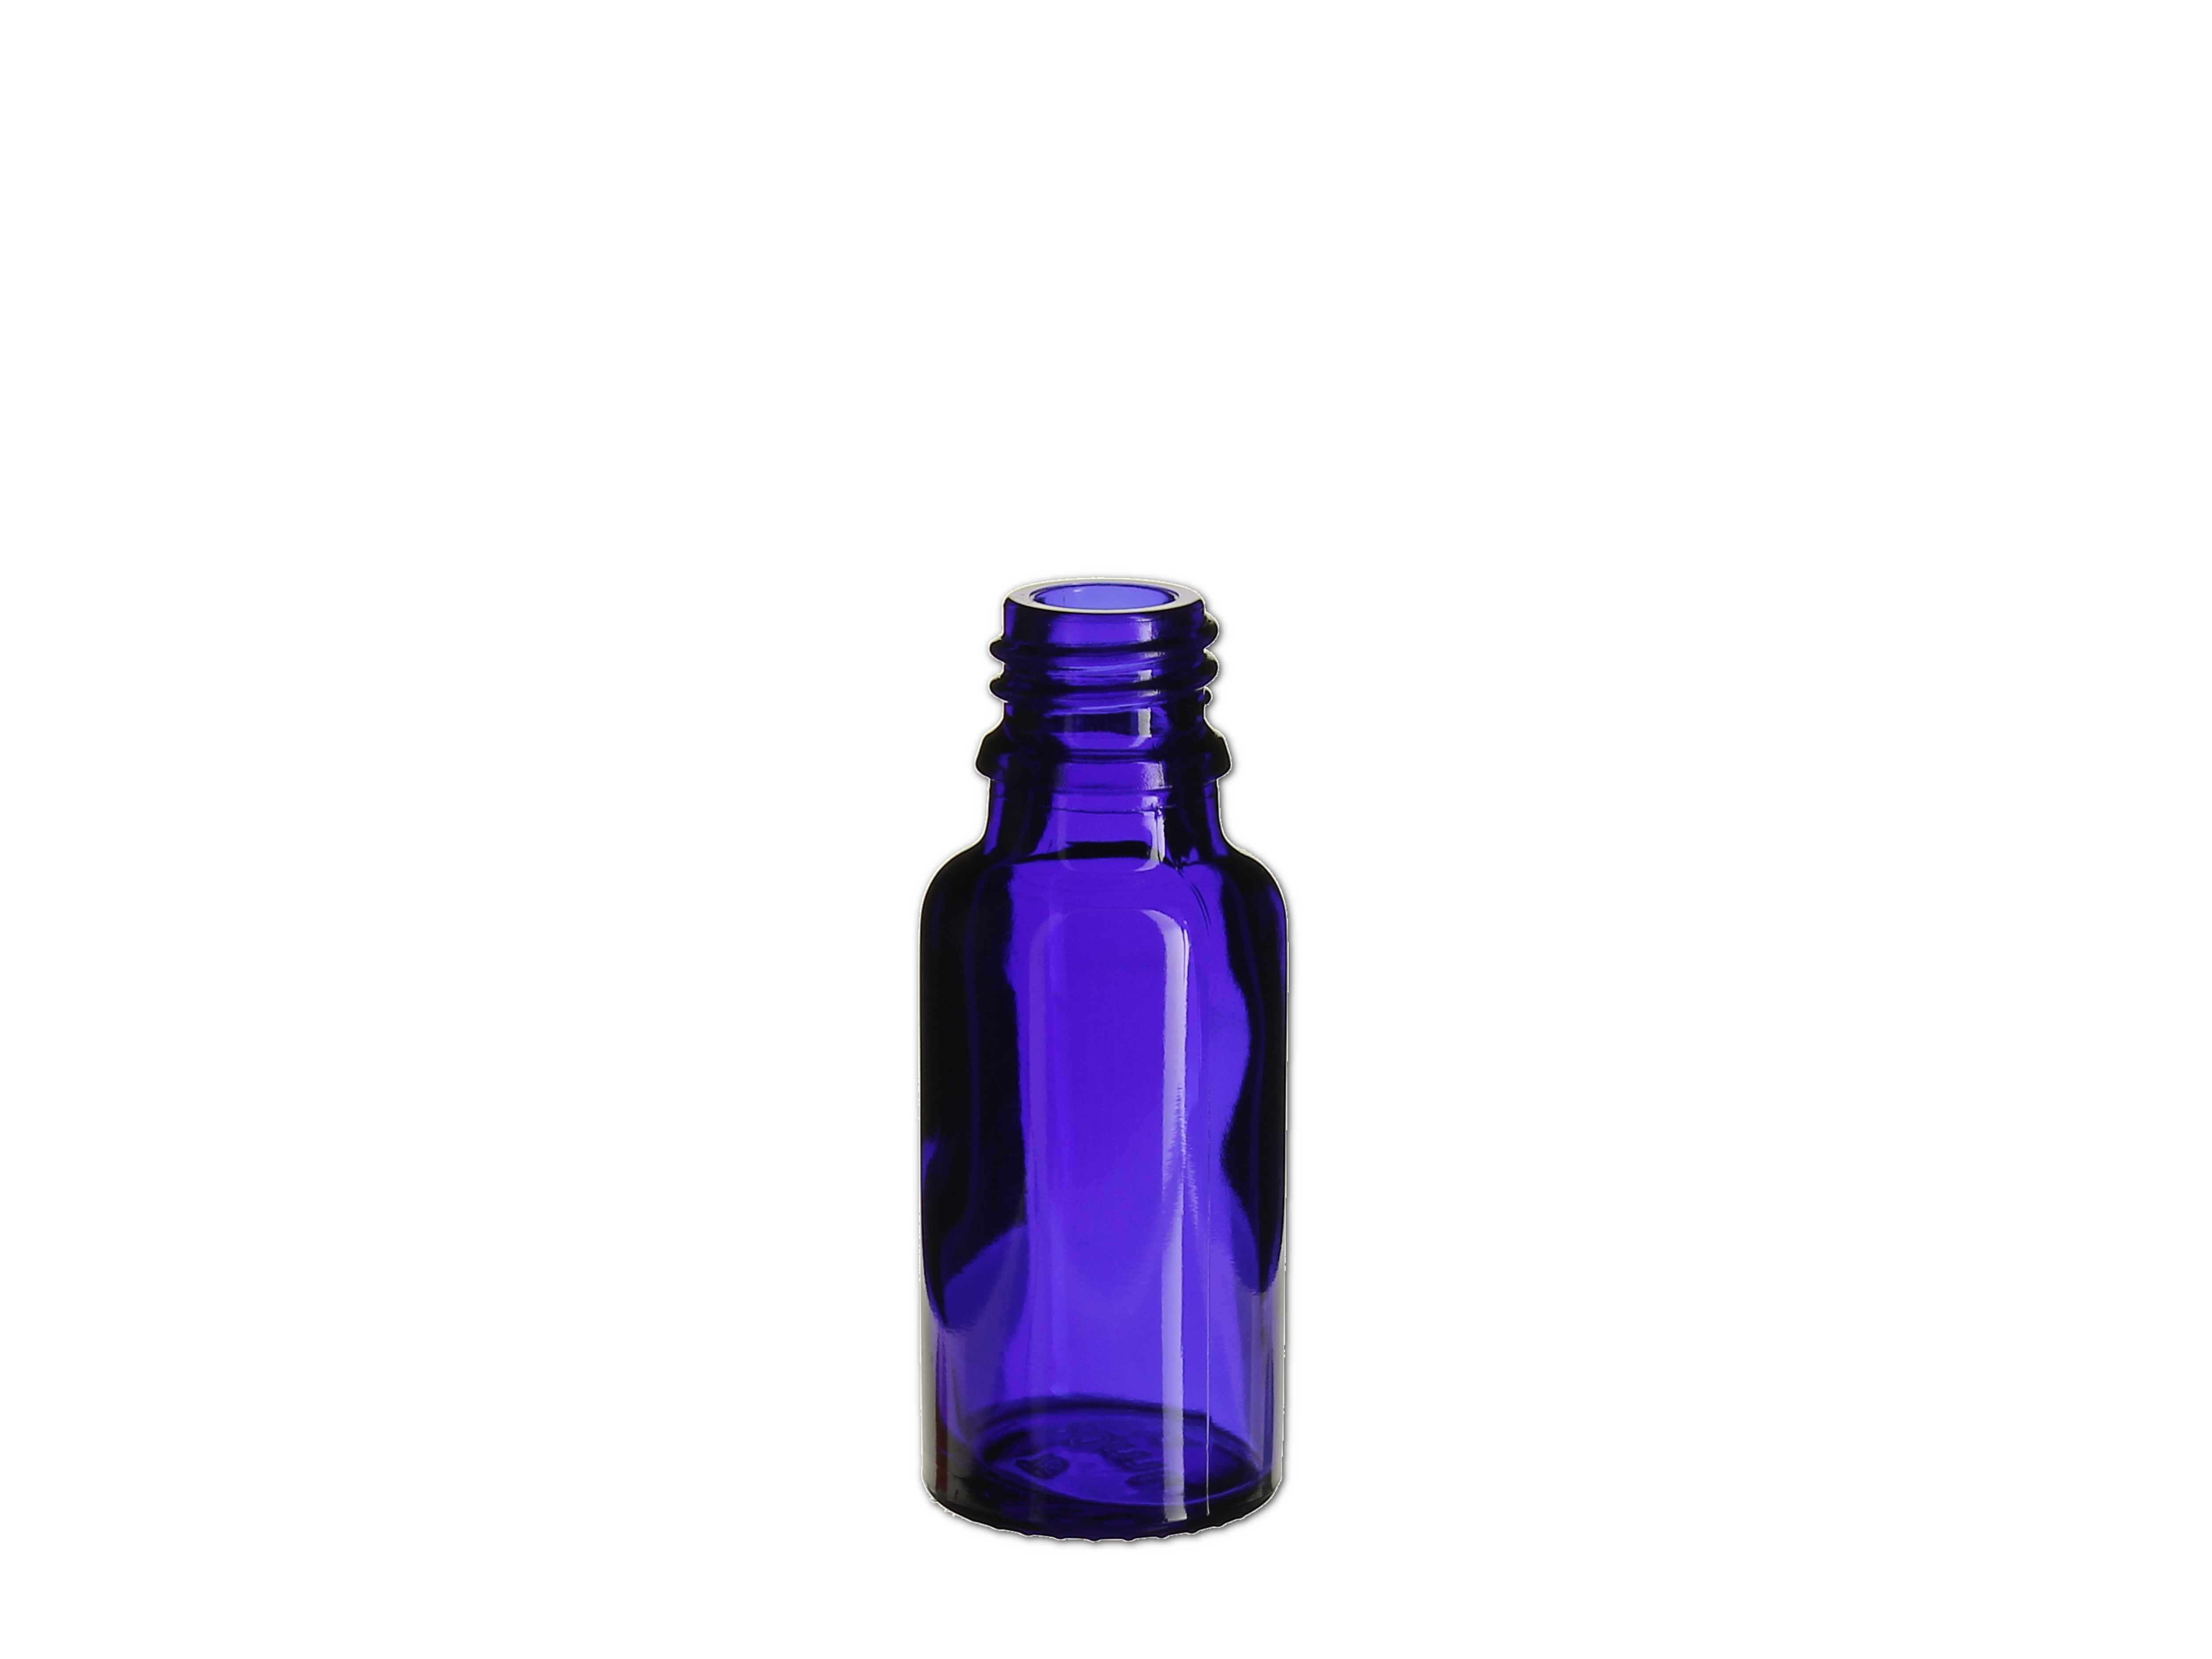    Flasche blau - GL18 - 20ml